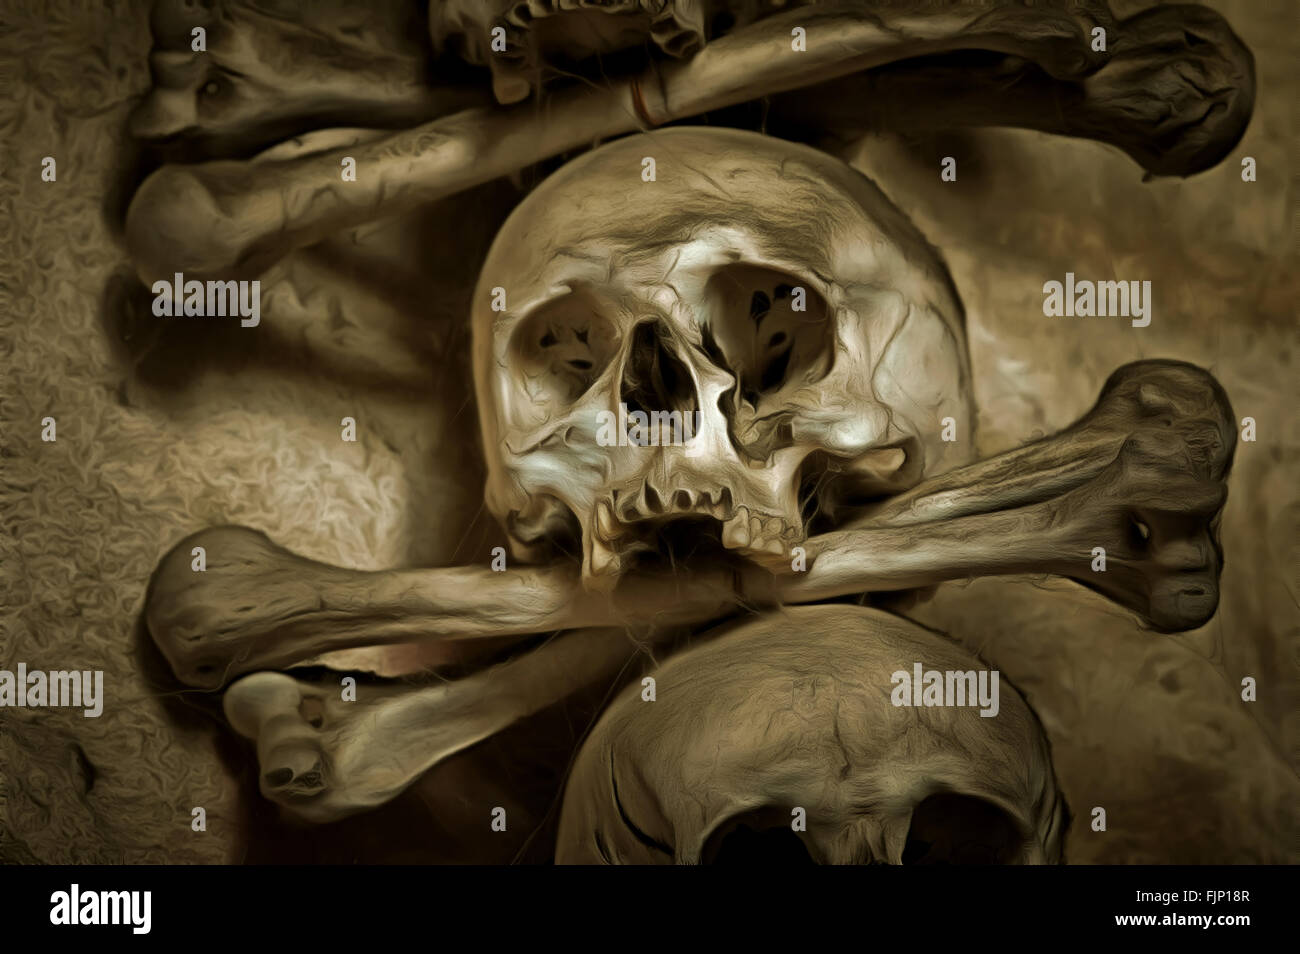 Human skull and bones - mixed media Stock Photo